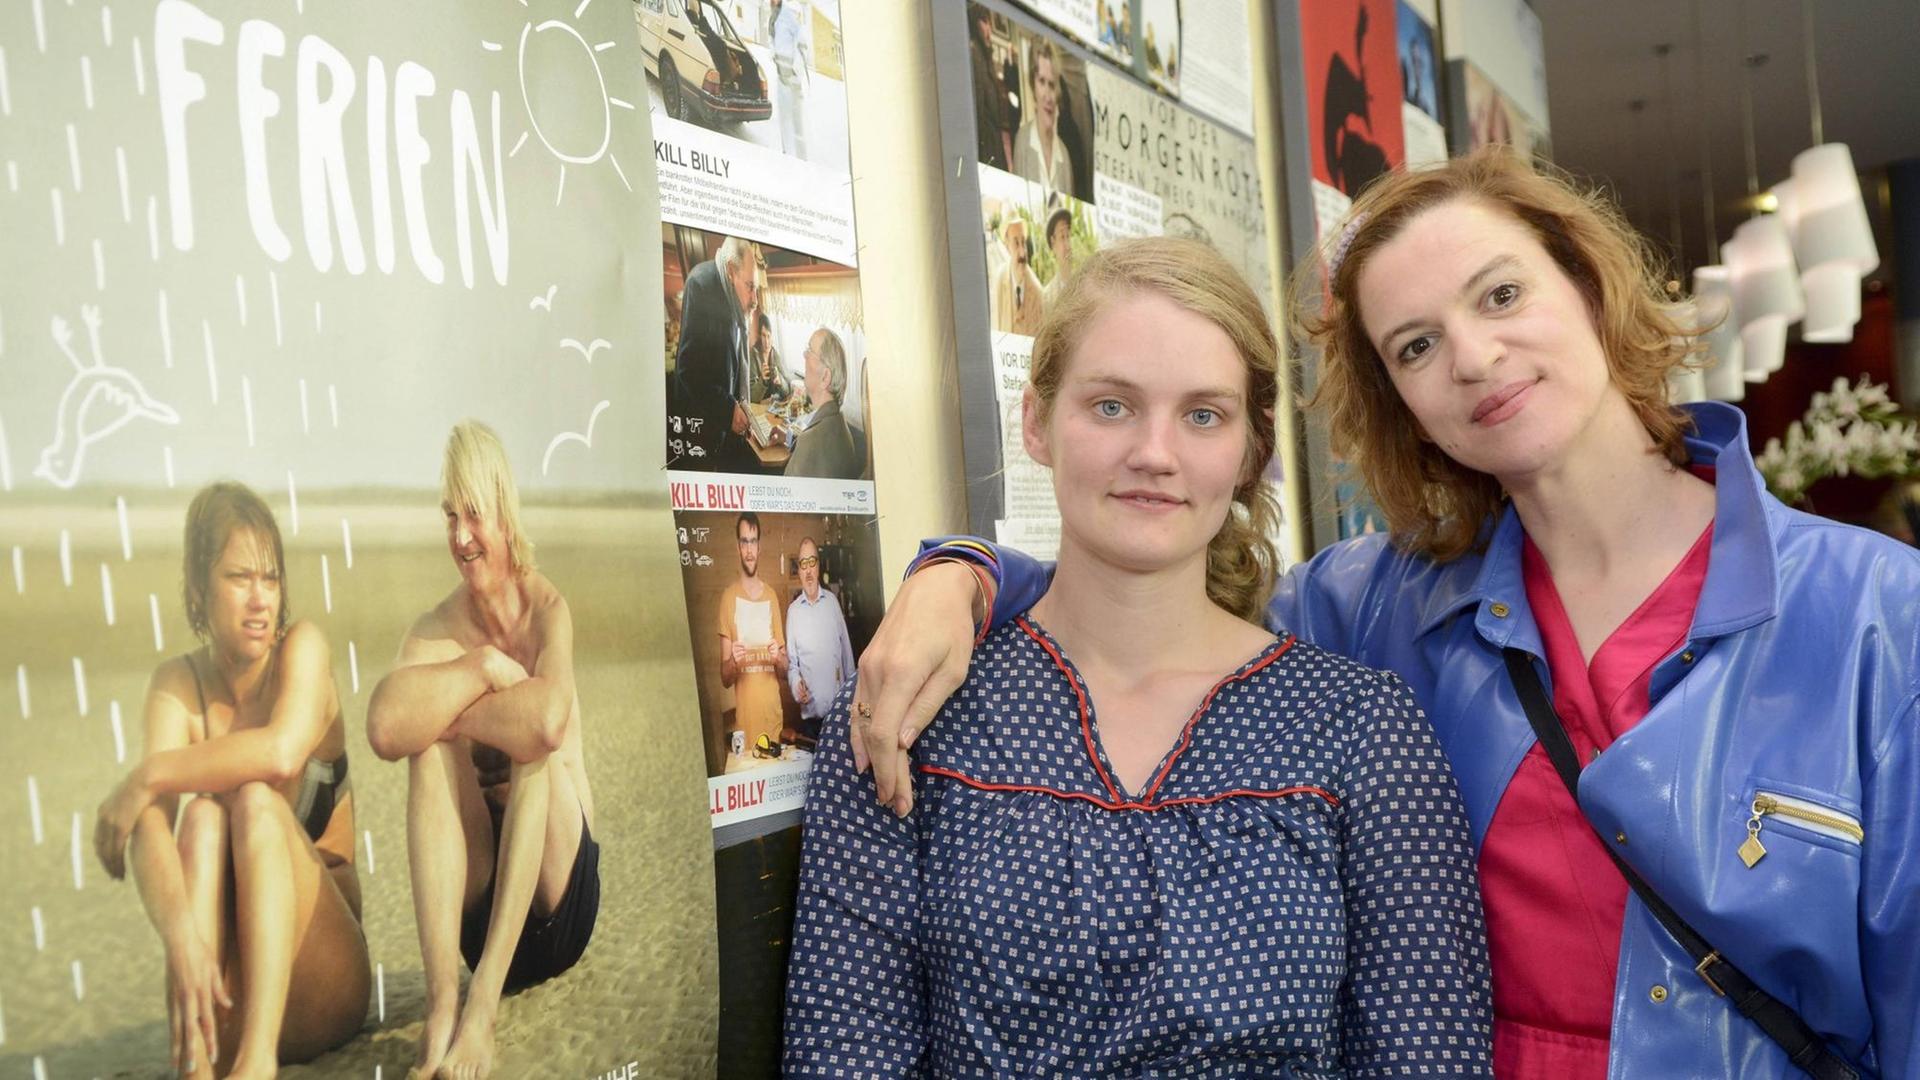 Regisseurin Bernadette Knoller (Tochter von Detlev Buck) und Schauspielerin Inga Busch bei der Präsentation ihres Films "Ferien".